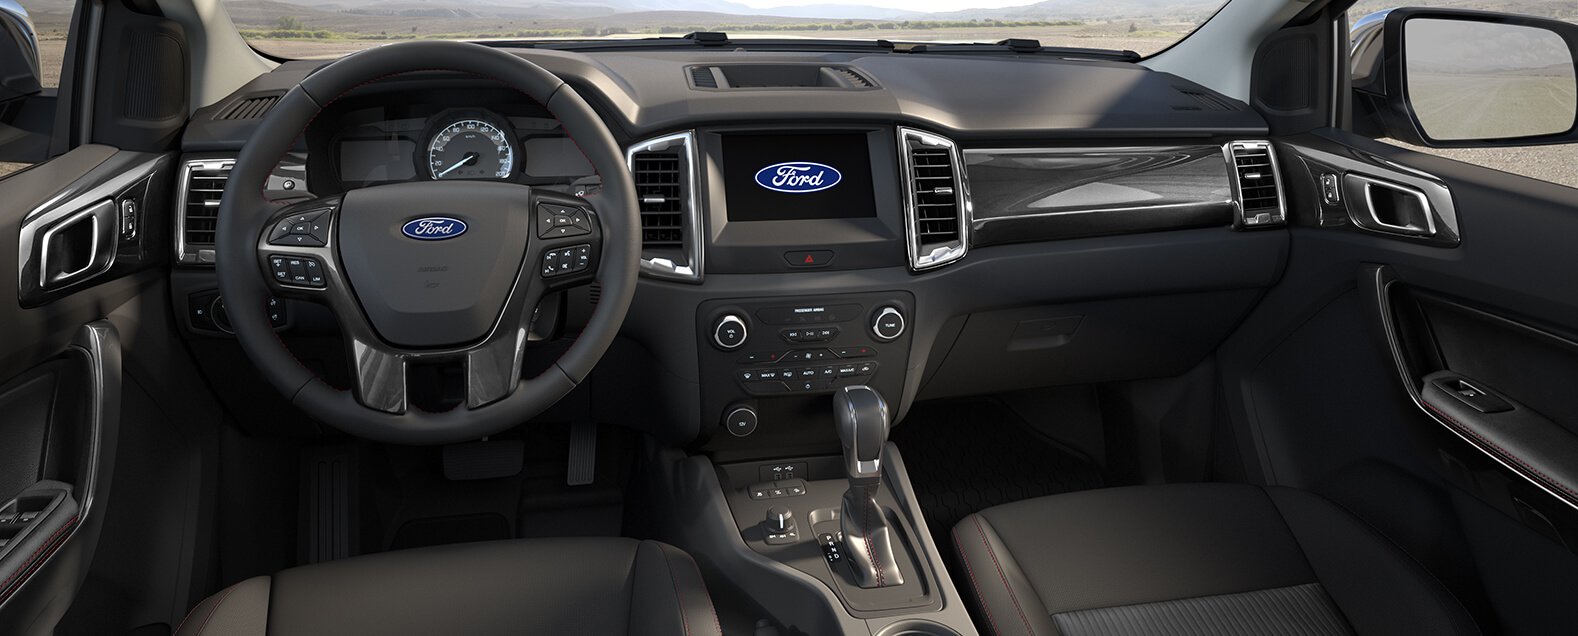 Foto de tecnologias da nova Ford Ranger 2022